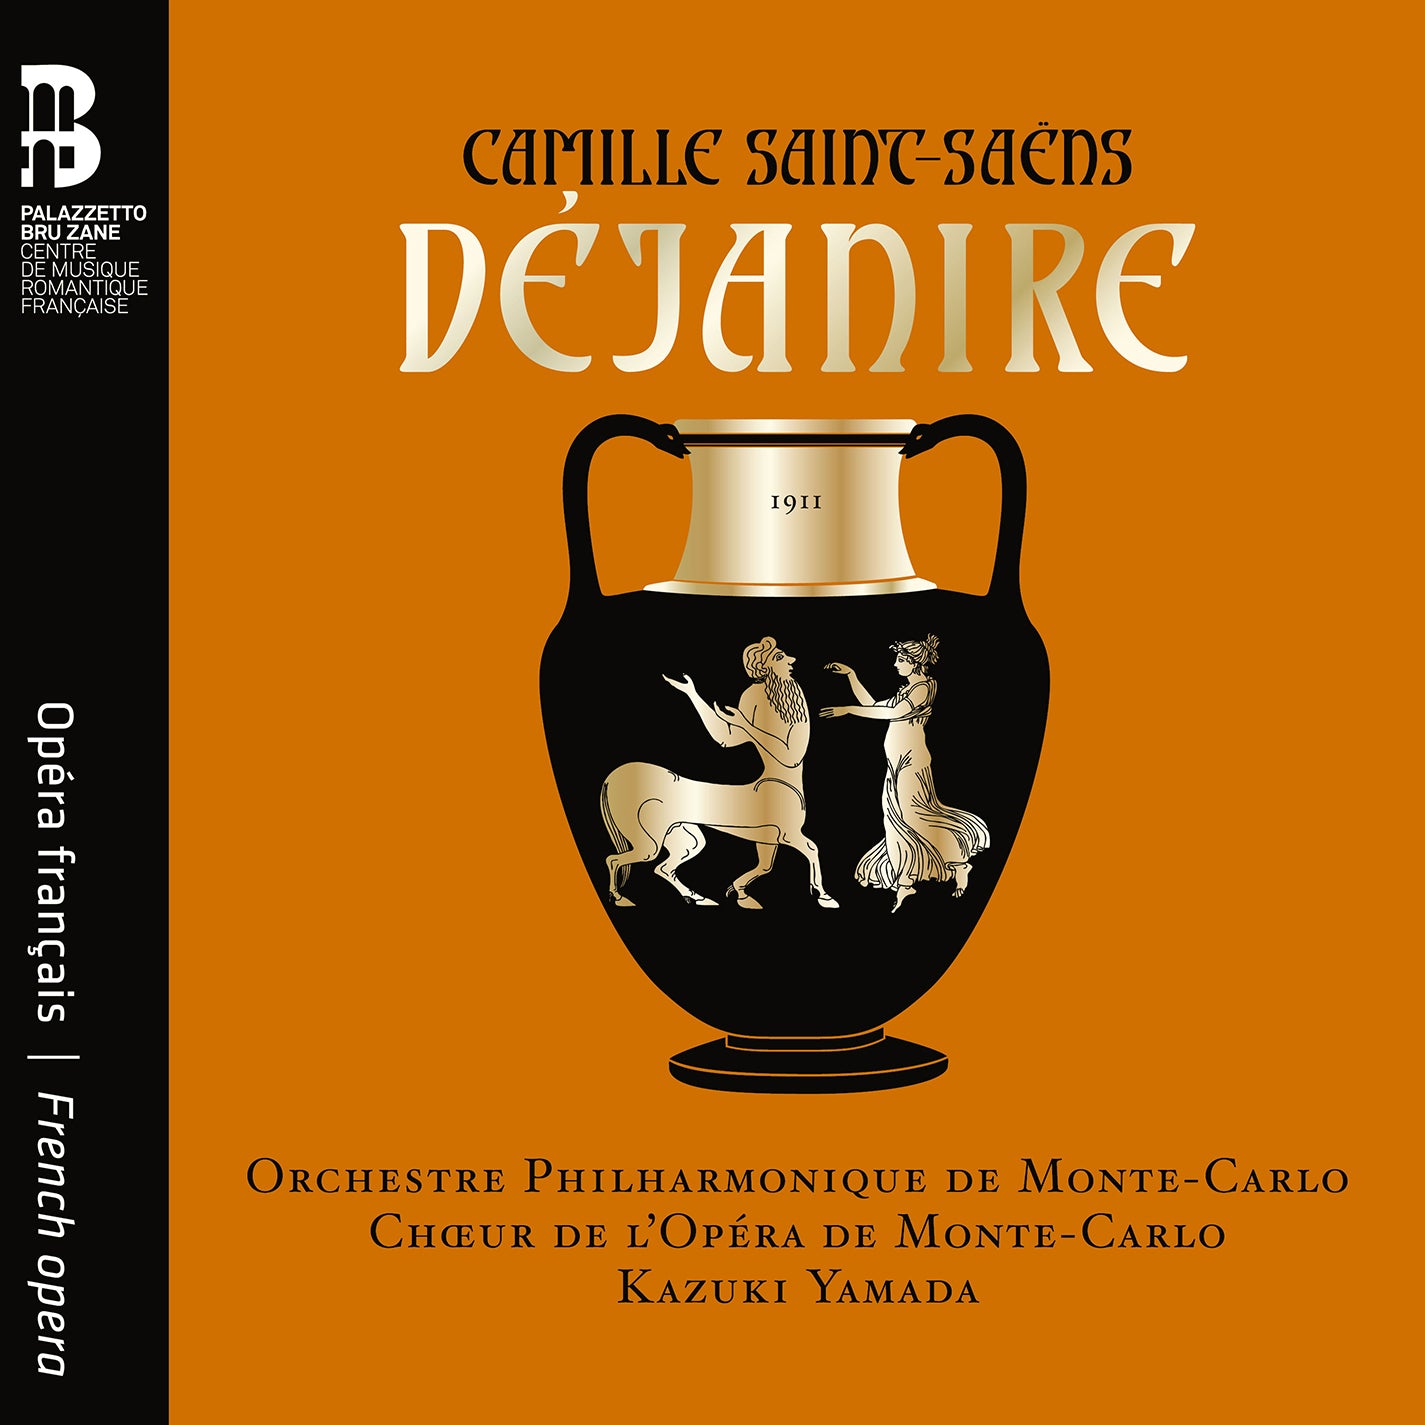 Saint-Saëns: Dejanire / Kazuki Yamada, Monte Carlo Philharmonic